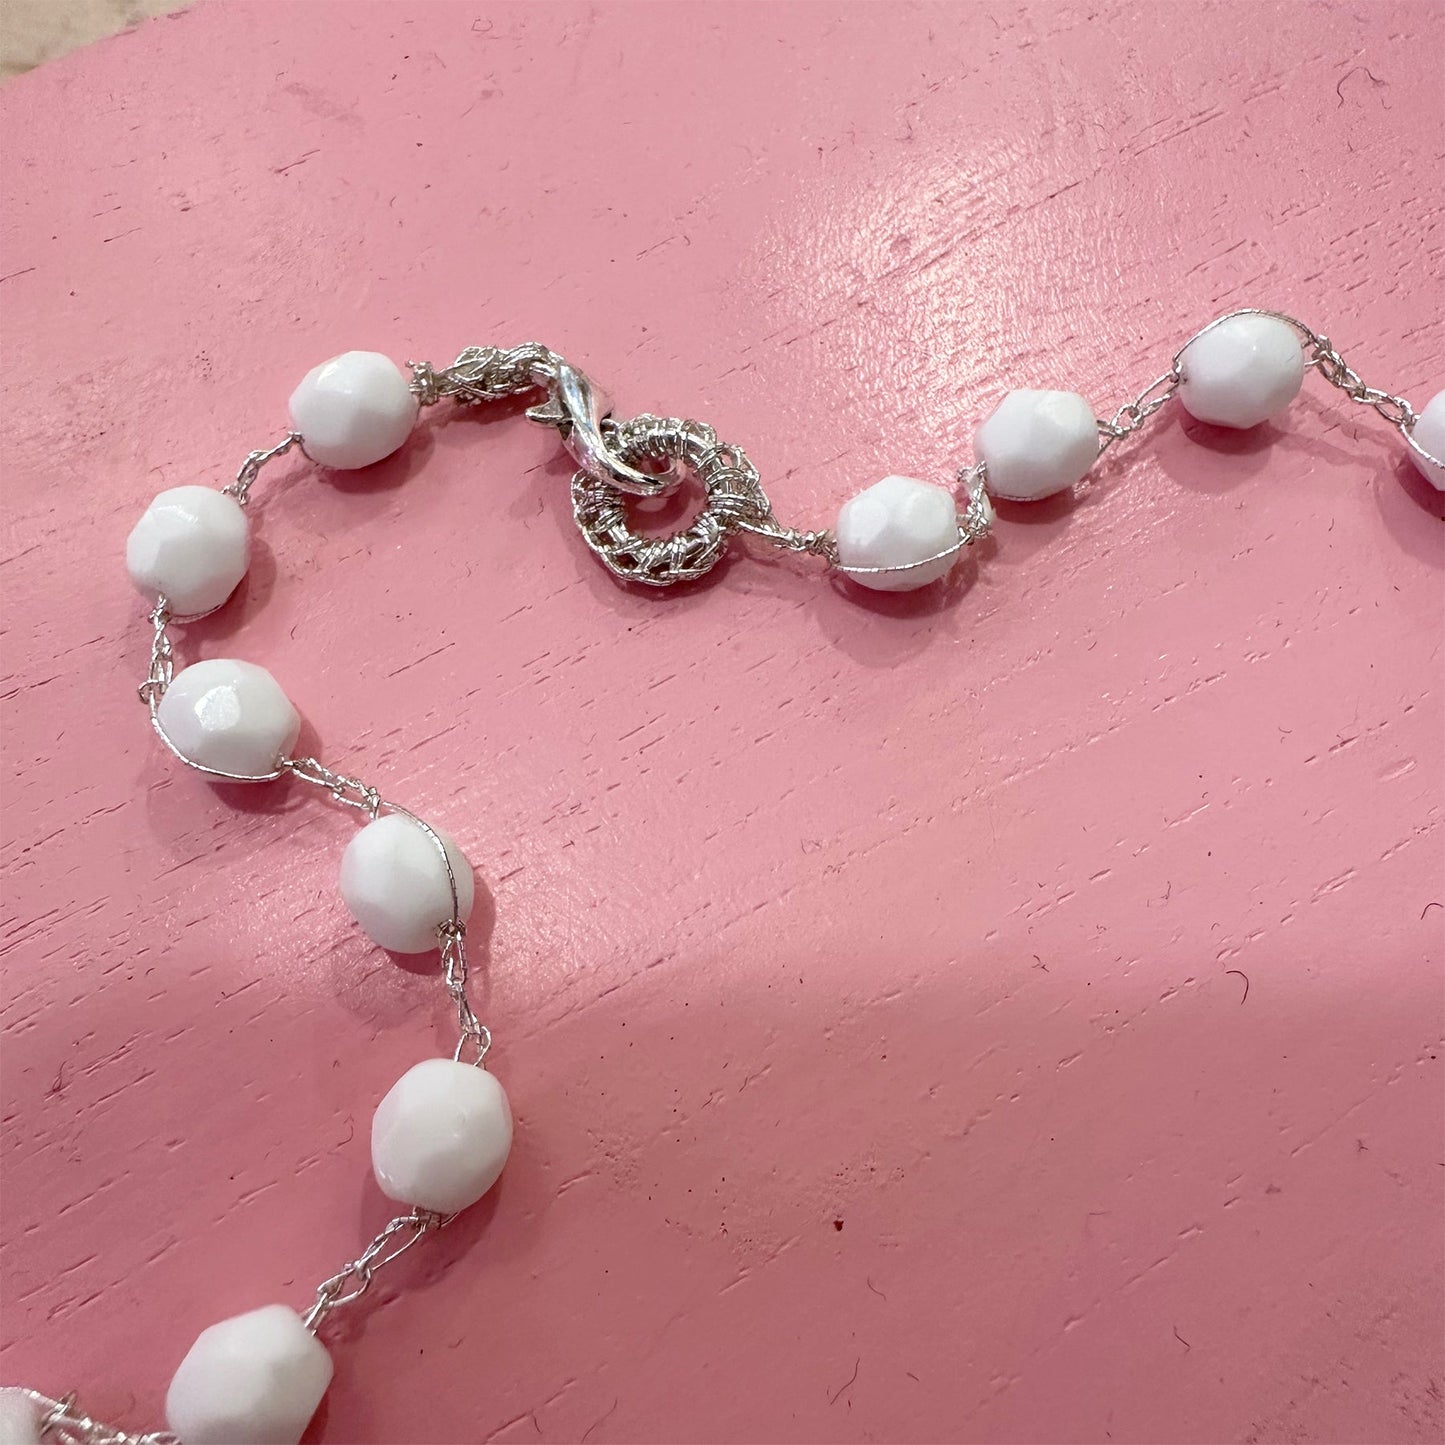 Gehäkelte Perlen Kette Weiß Silber - KNOCKNOK Fashion